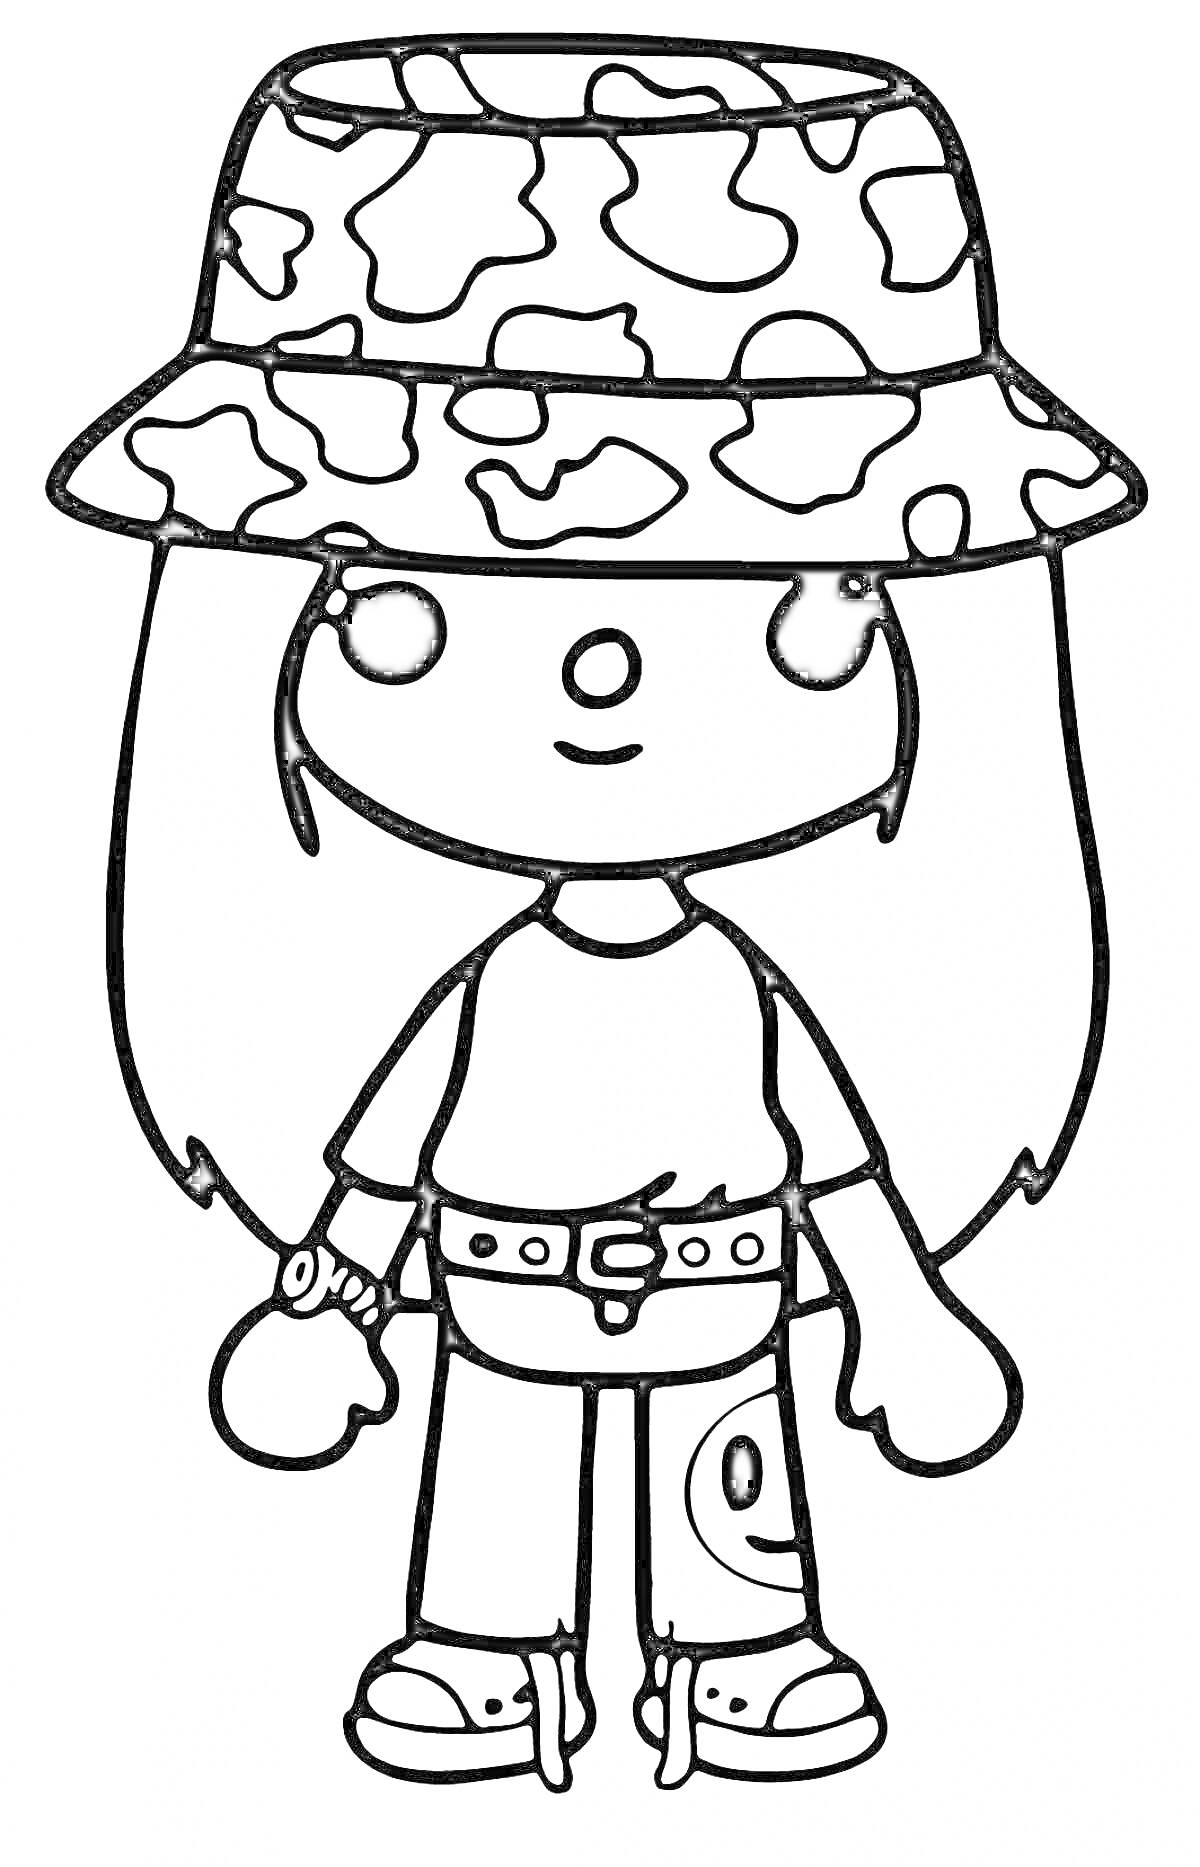 Раскраска Персонаж Тока Бока в шляпе с камуфляжным узором, футболке, джинсах с нашивкой и часами